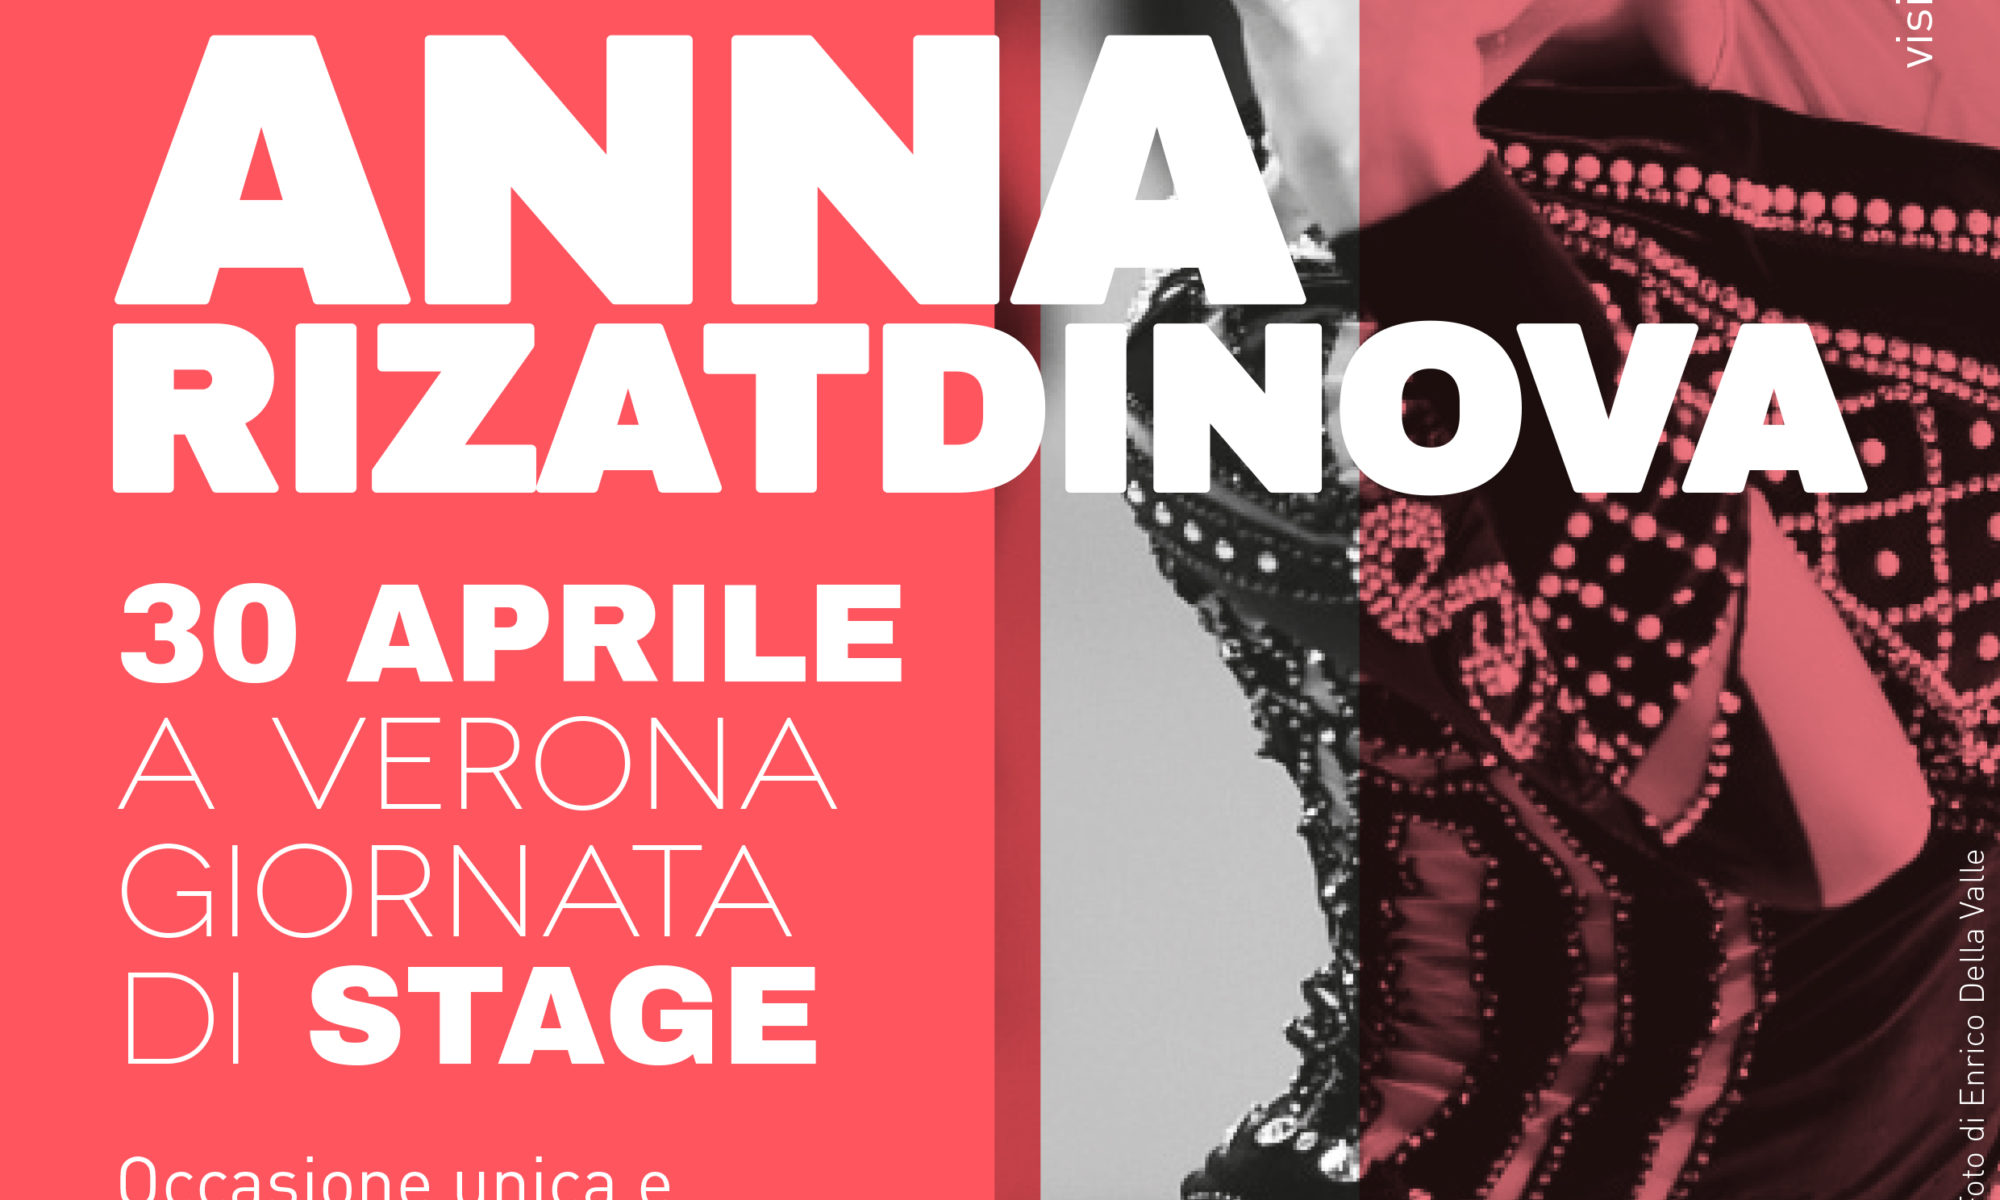 Stage Anna Rizatdinova Verona